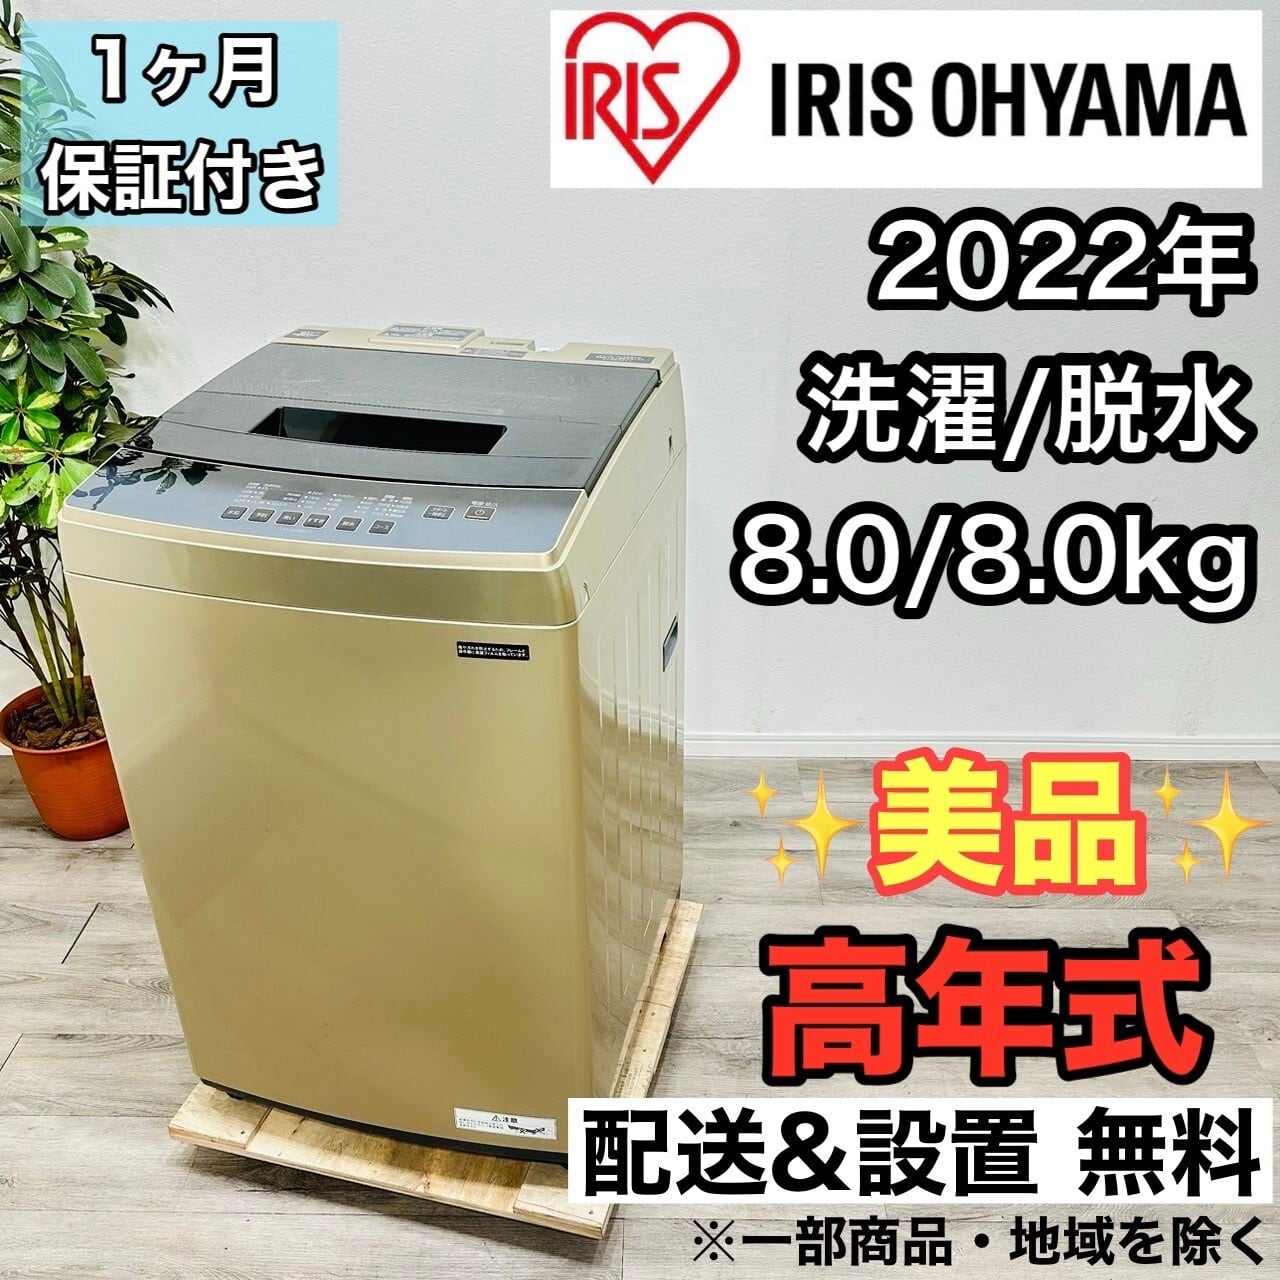 ♦️HITACHI a1934 洗濯機 8.0kg 2018年製 11♦️ | ネットで ...